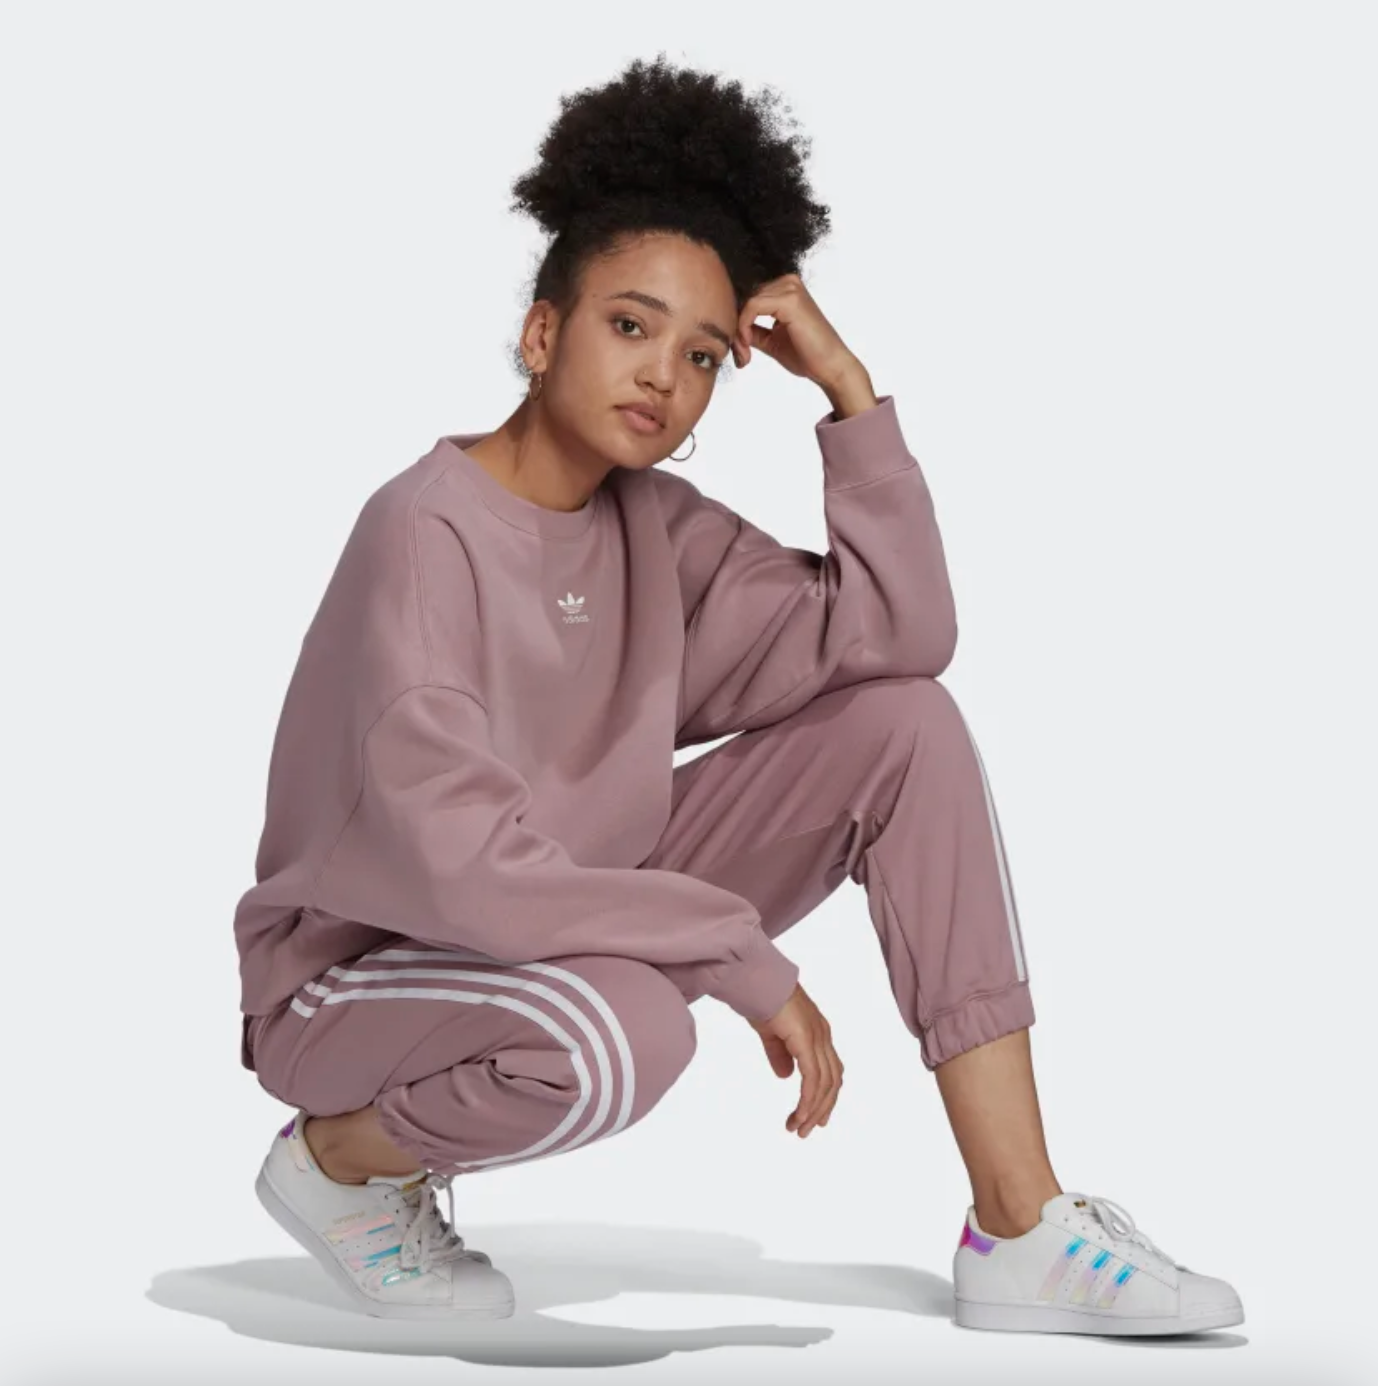 model in a pink sweatsuit